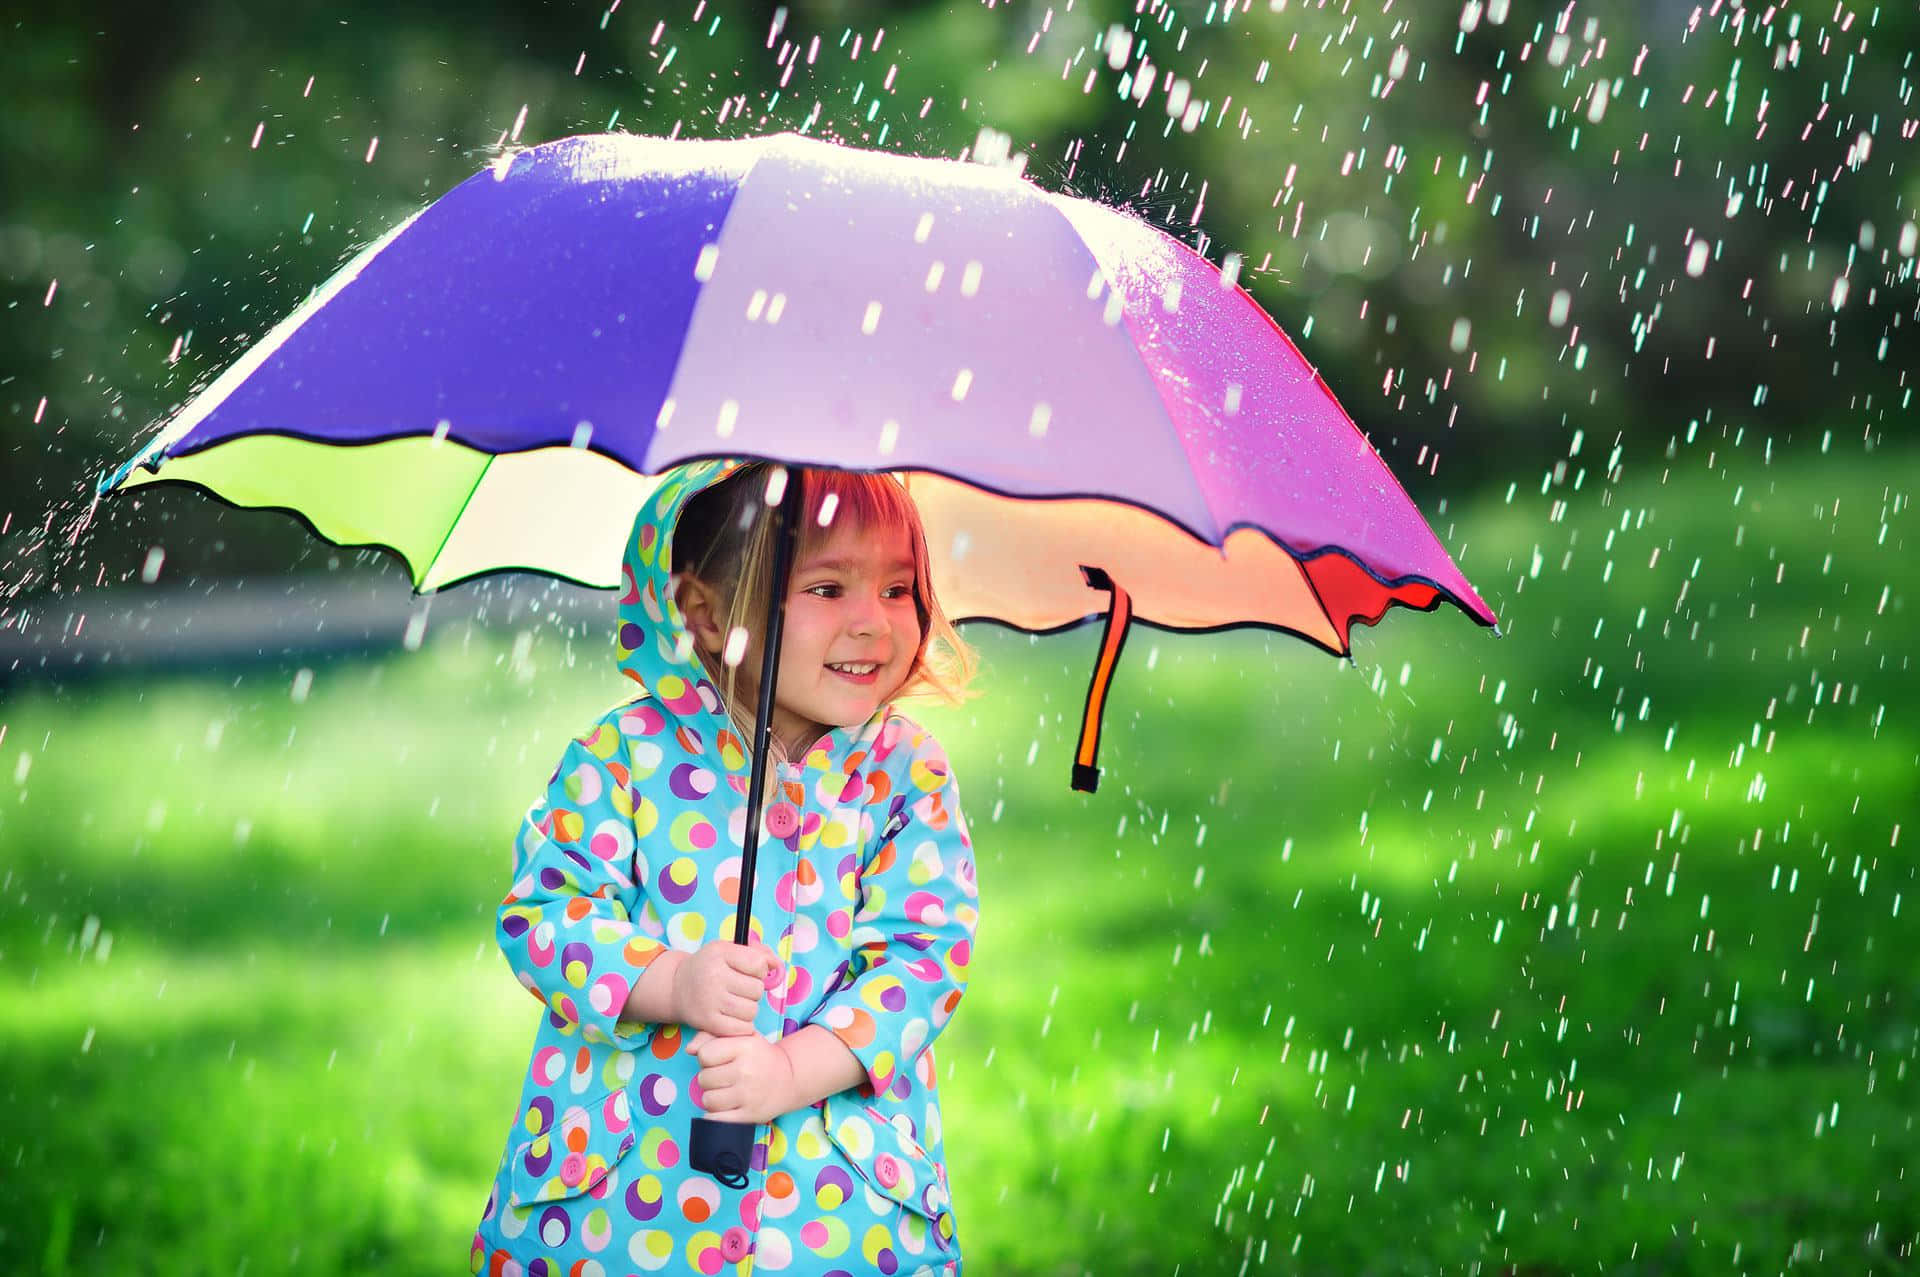 Billedeaf En Lille Pige Med Paraply På En Regnvejrsdag.